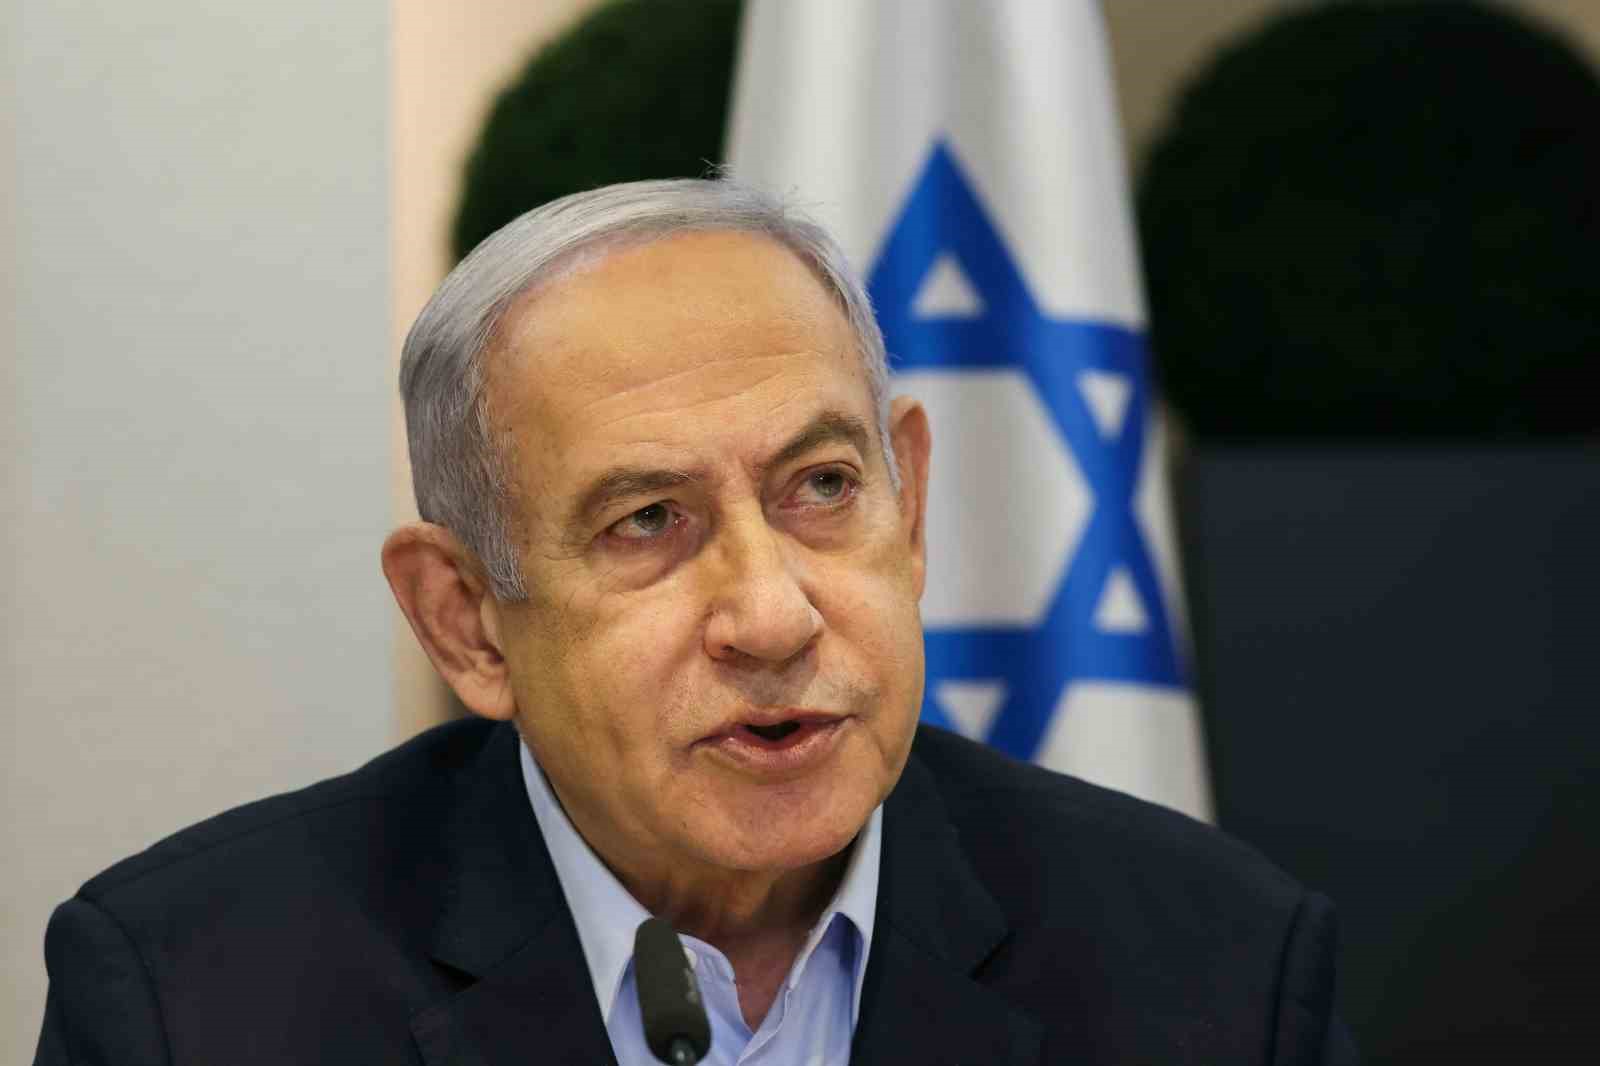 İsrail Başbakanı Netanyahu: “Durdurduk, engelledik, birlikte kazanacağız”